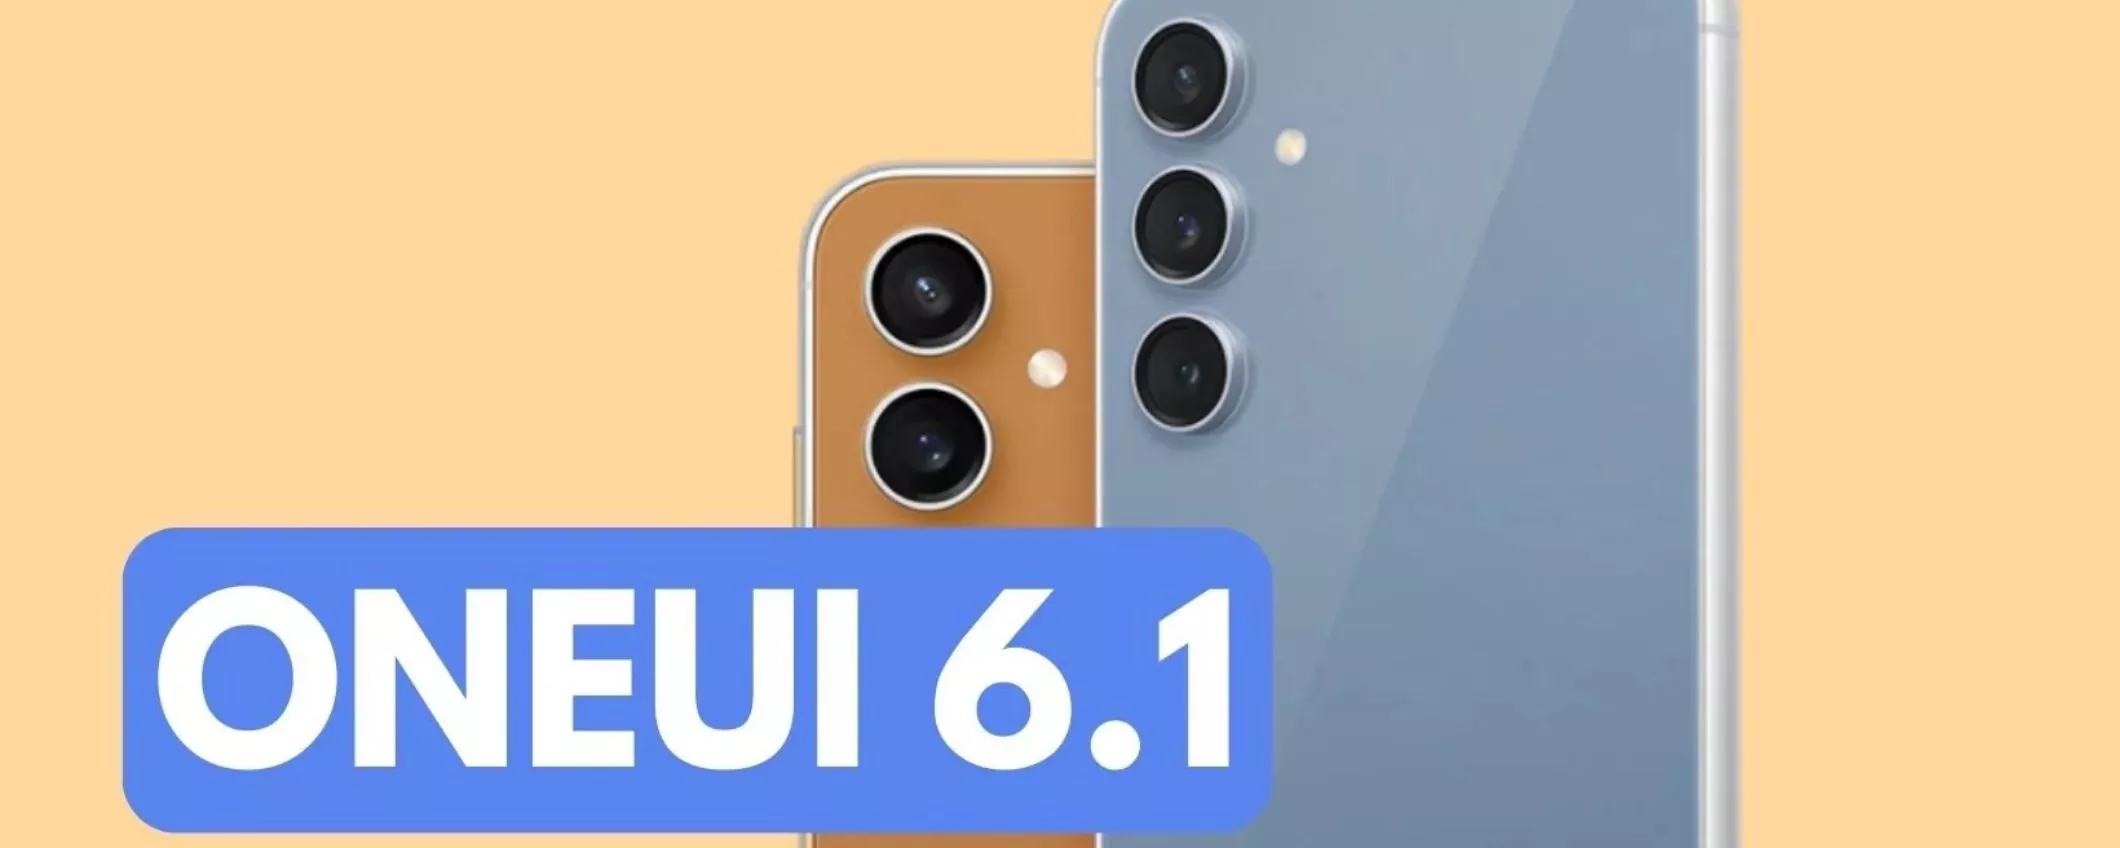 One UI 6.1 su Samsung Galaxy: tutte le novità del maxi aggiornamento